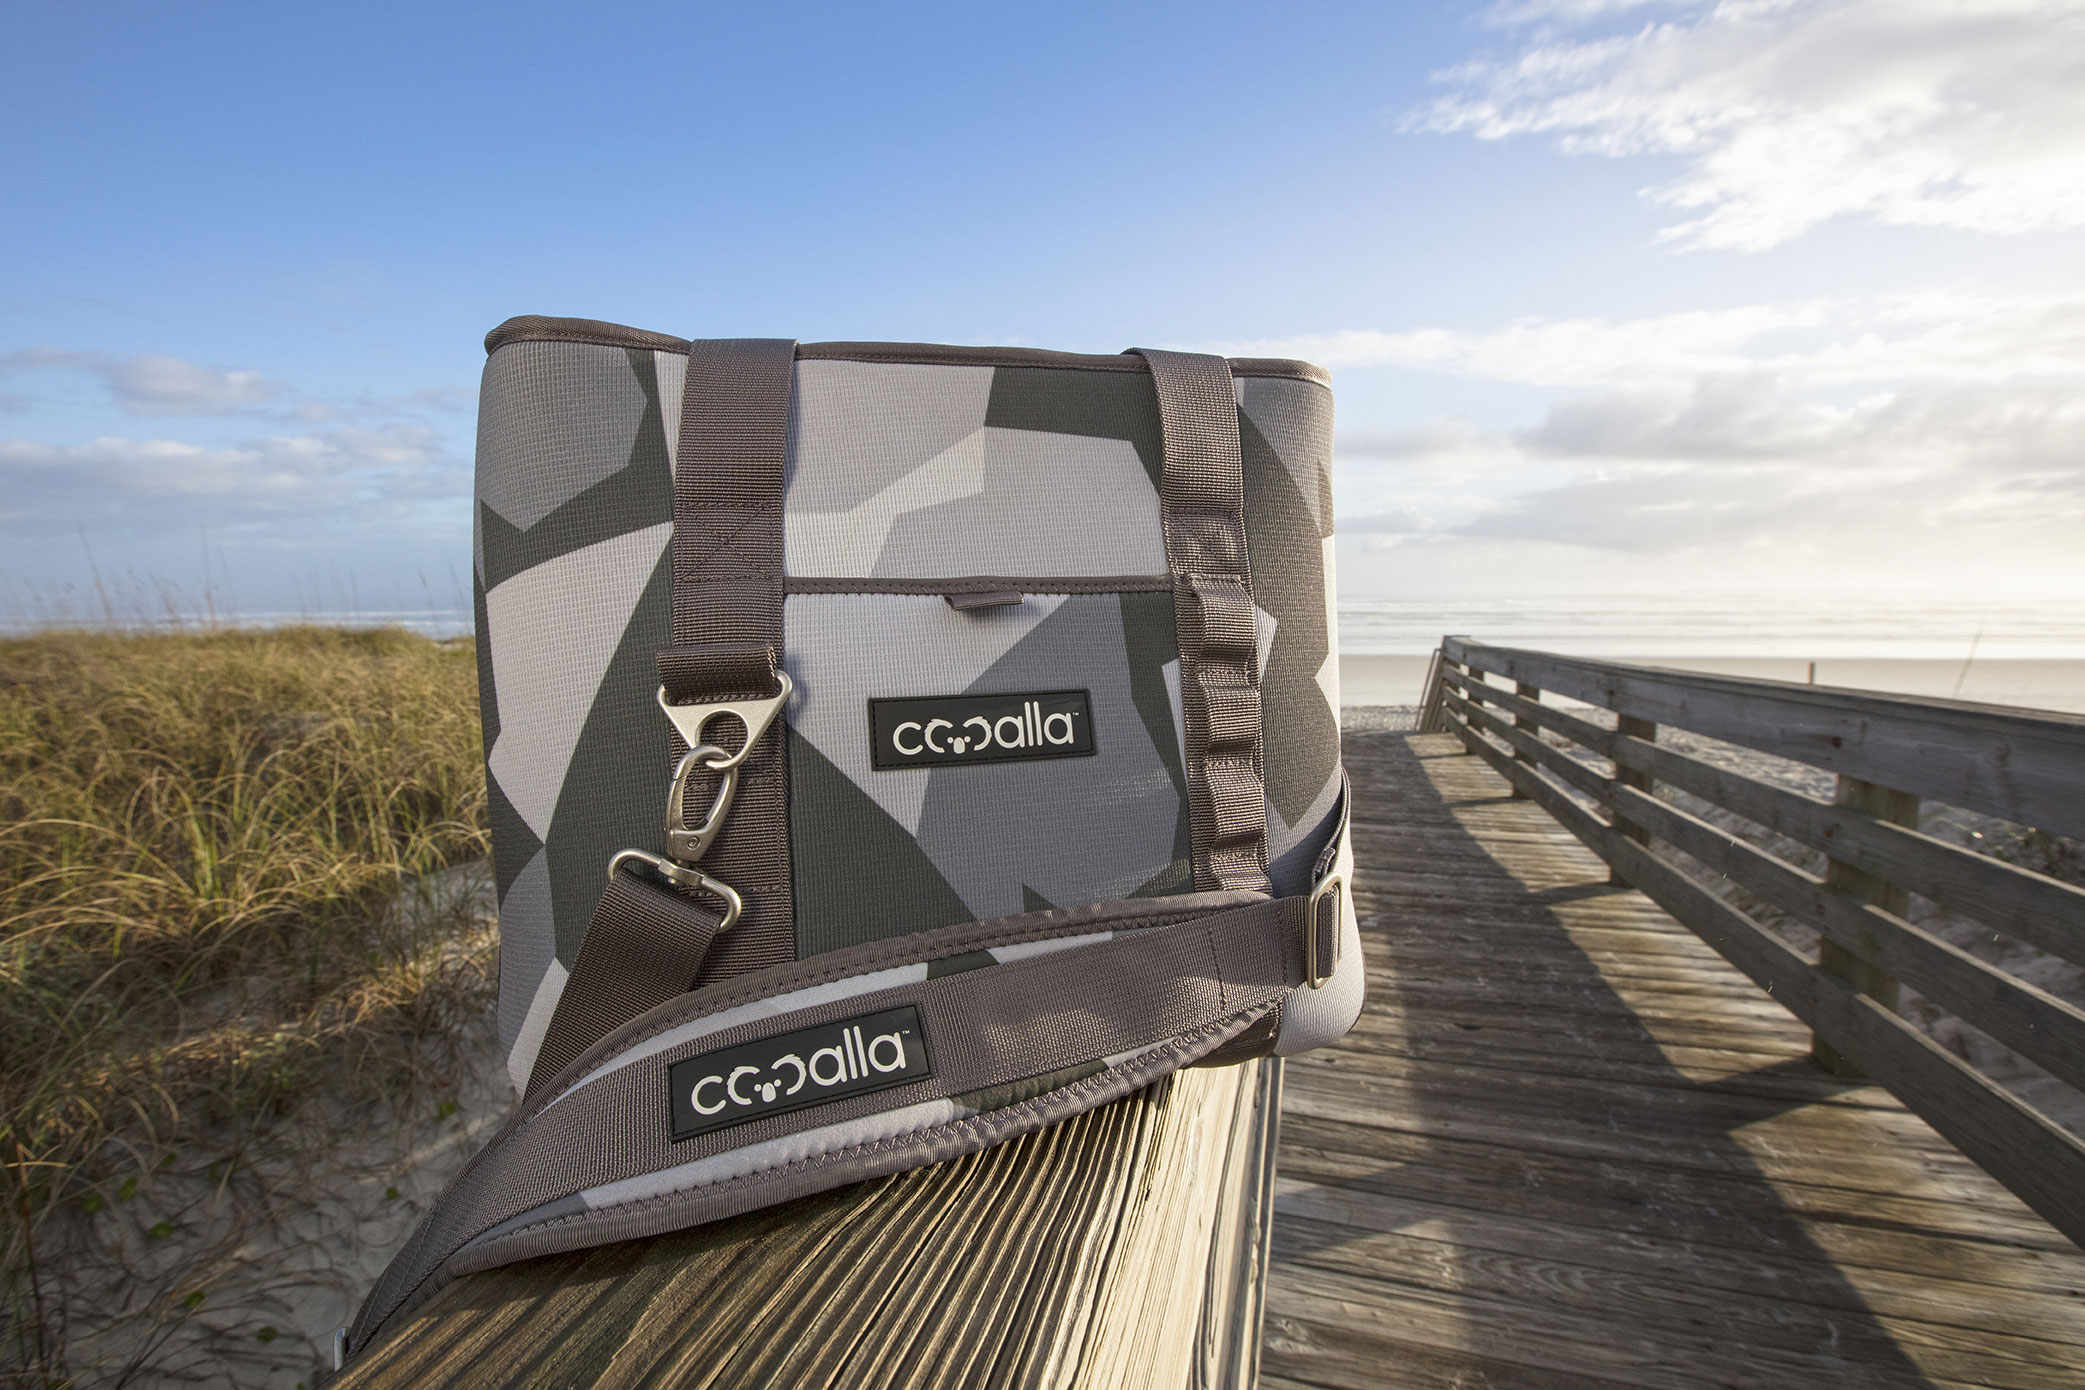 cooalla-cooler-on-boardwalk.jpg